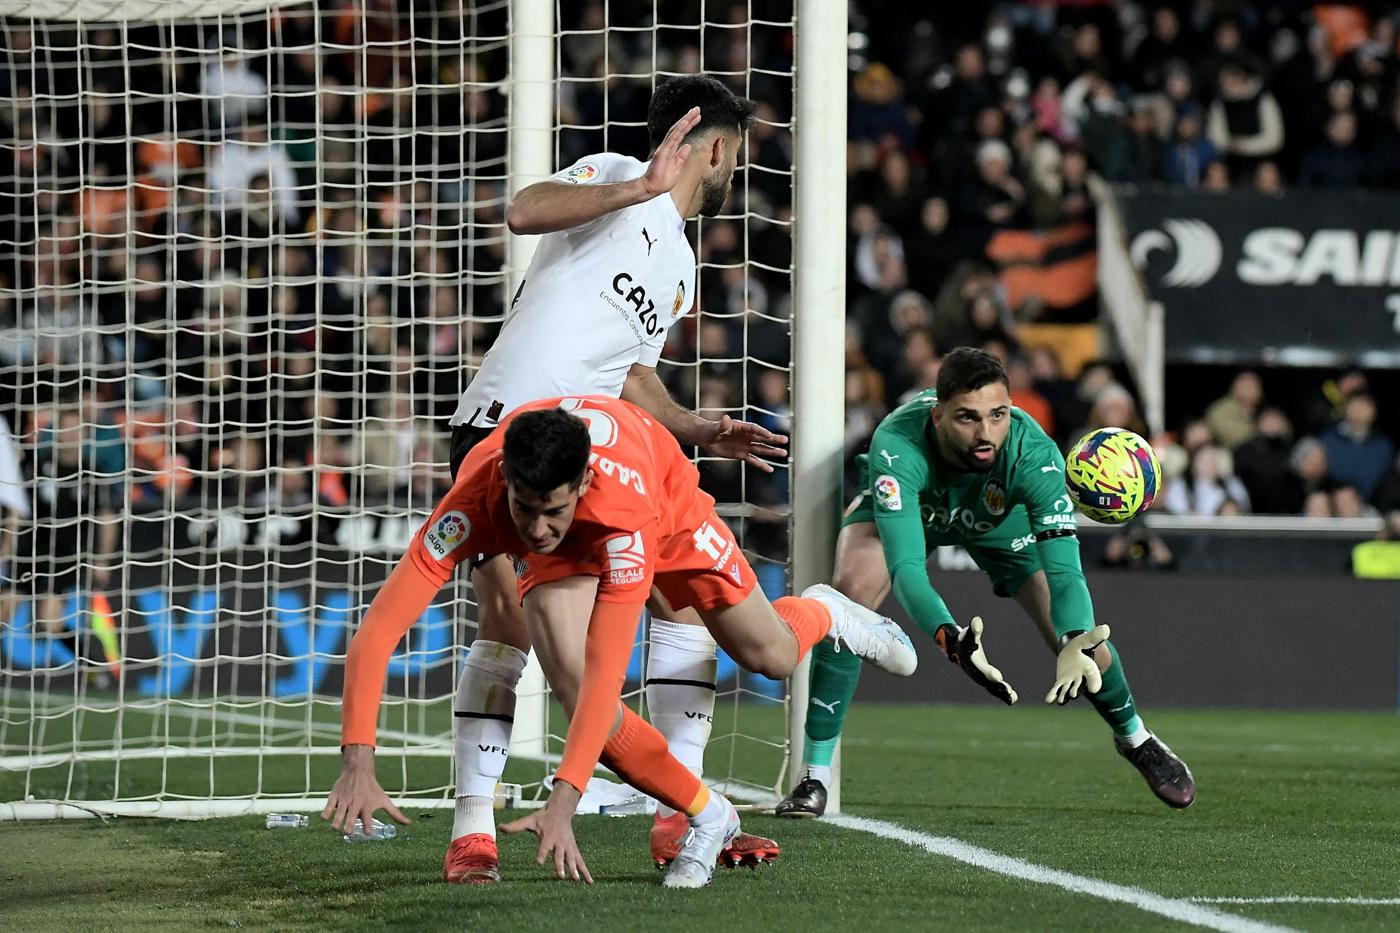 Валенсия - Реал С-дад - 1:0. Чемпионат Испании, 23-й тур. Обзор матча, статистика